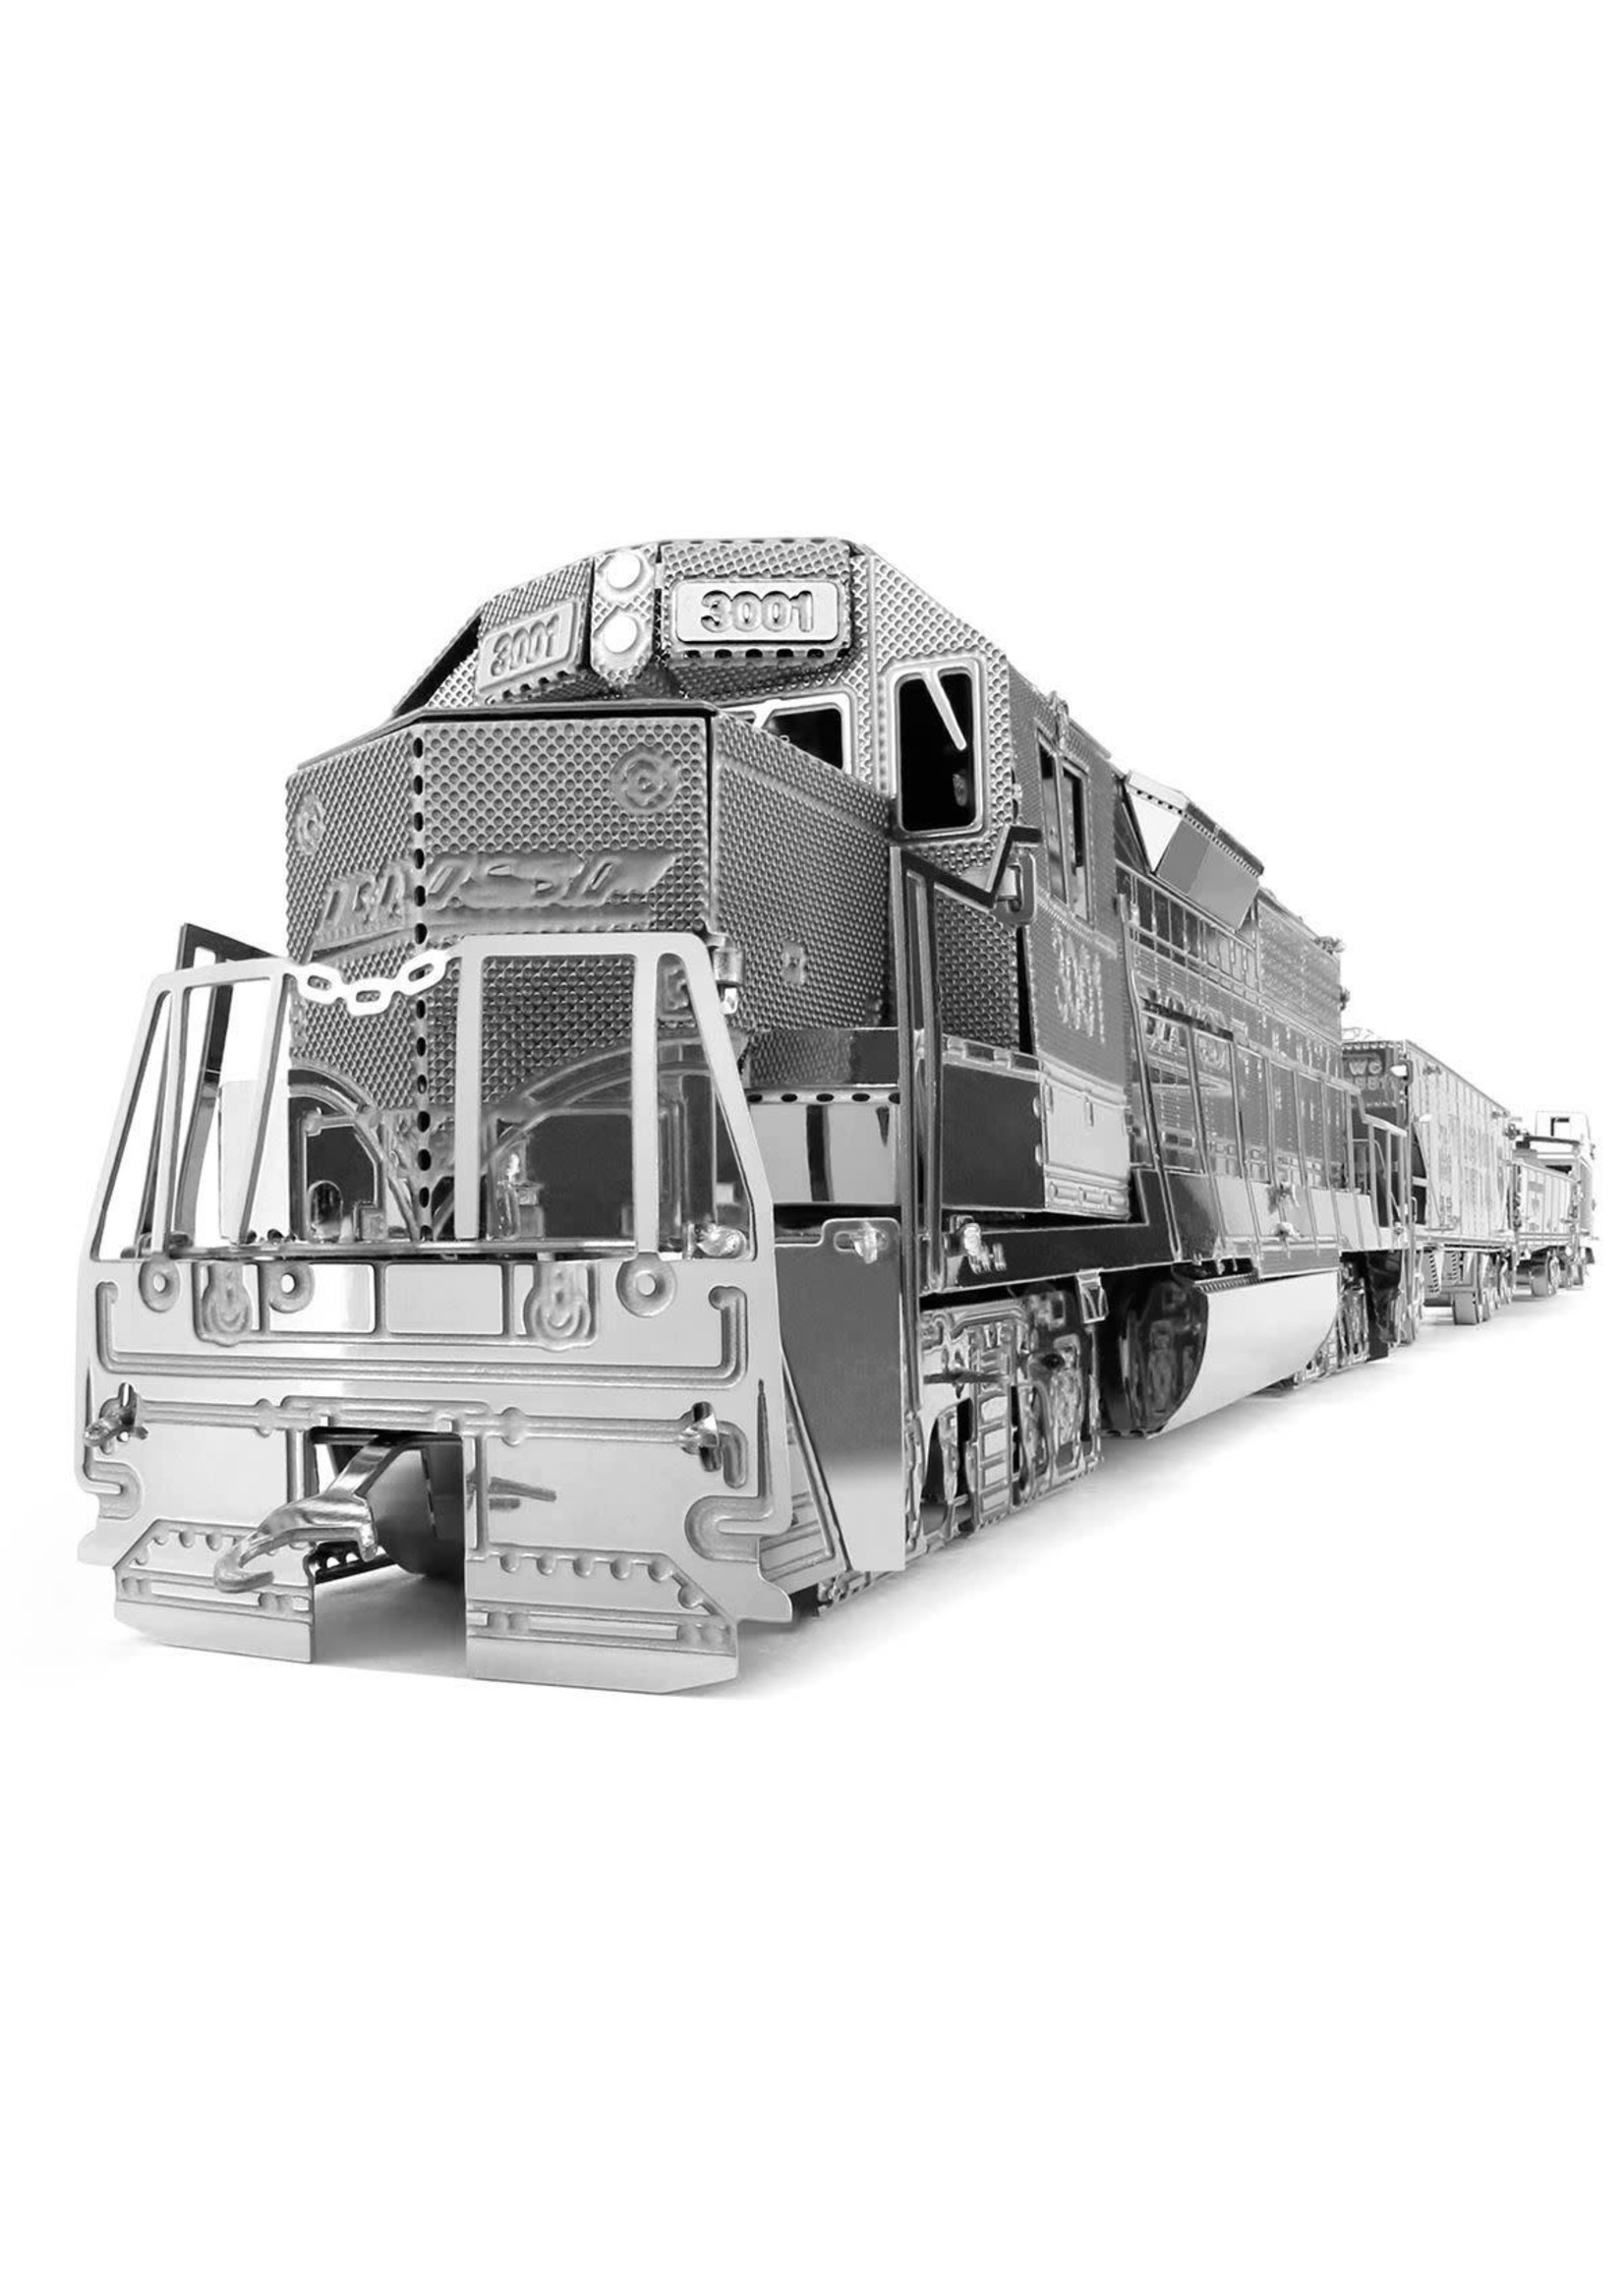 MetalWorks Freight Train Set